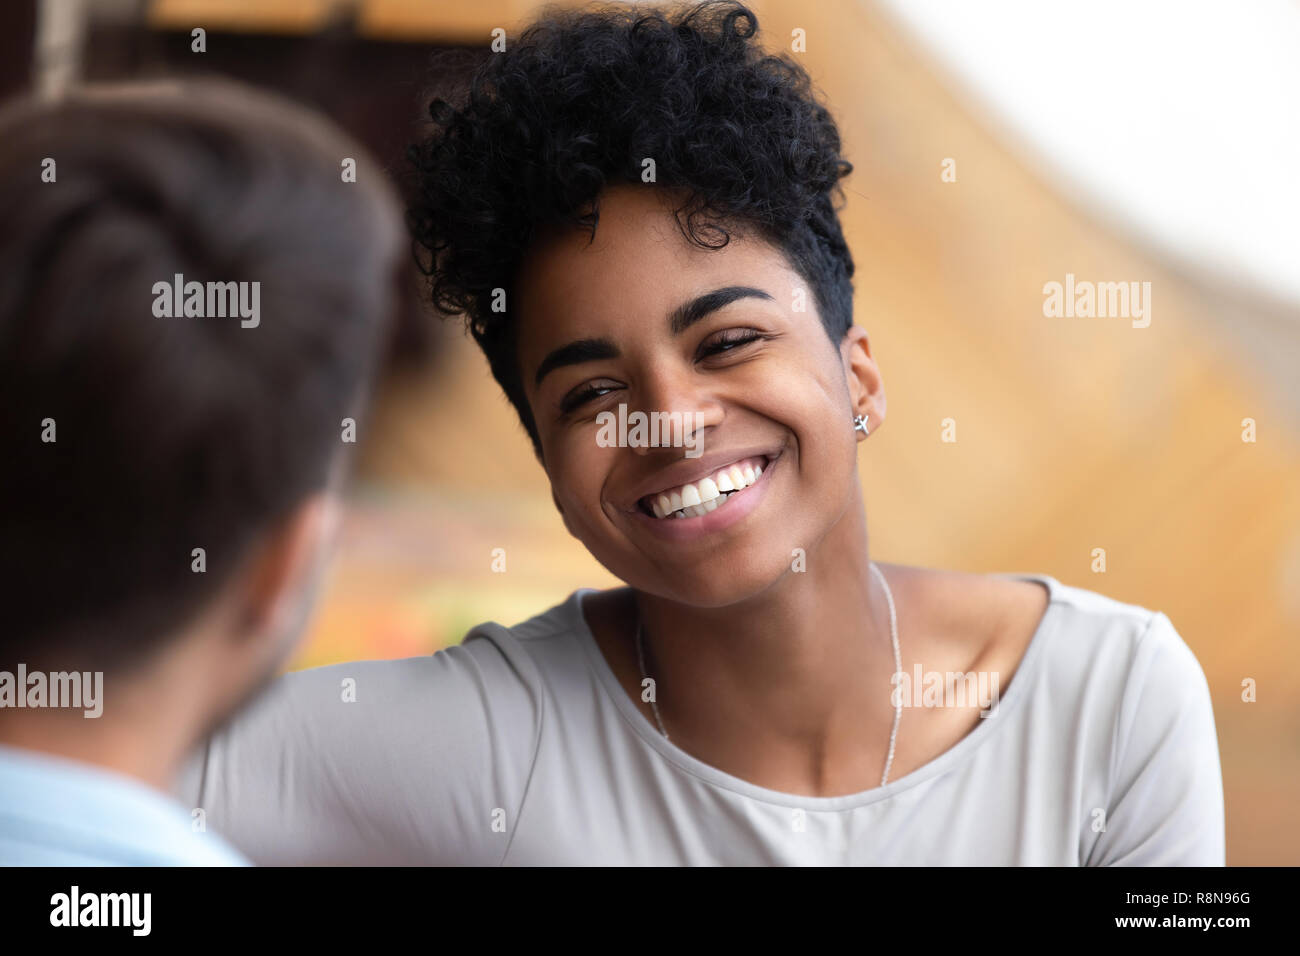 Sorridente americano africano donna che guarda l'uomo close up Foto Stock